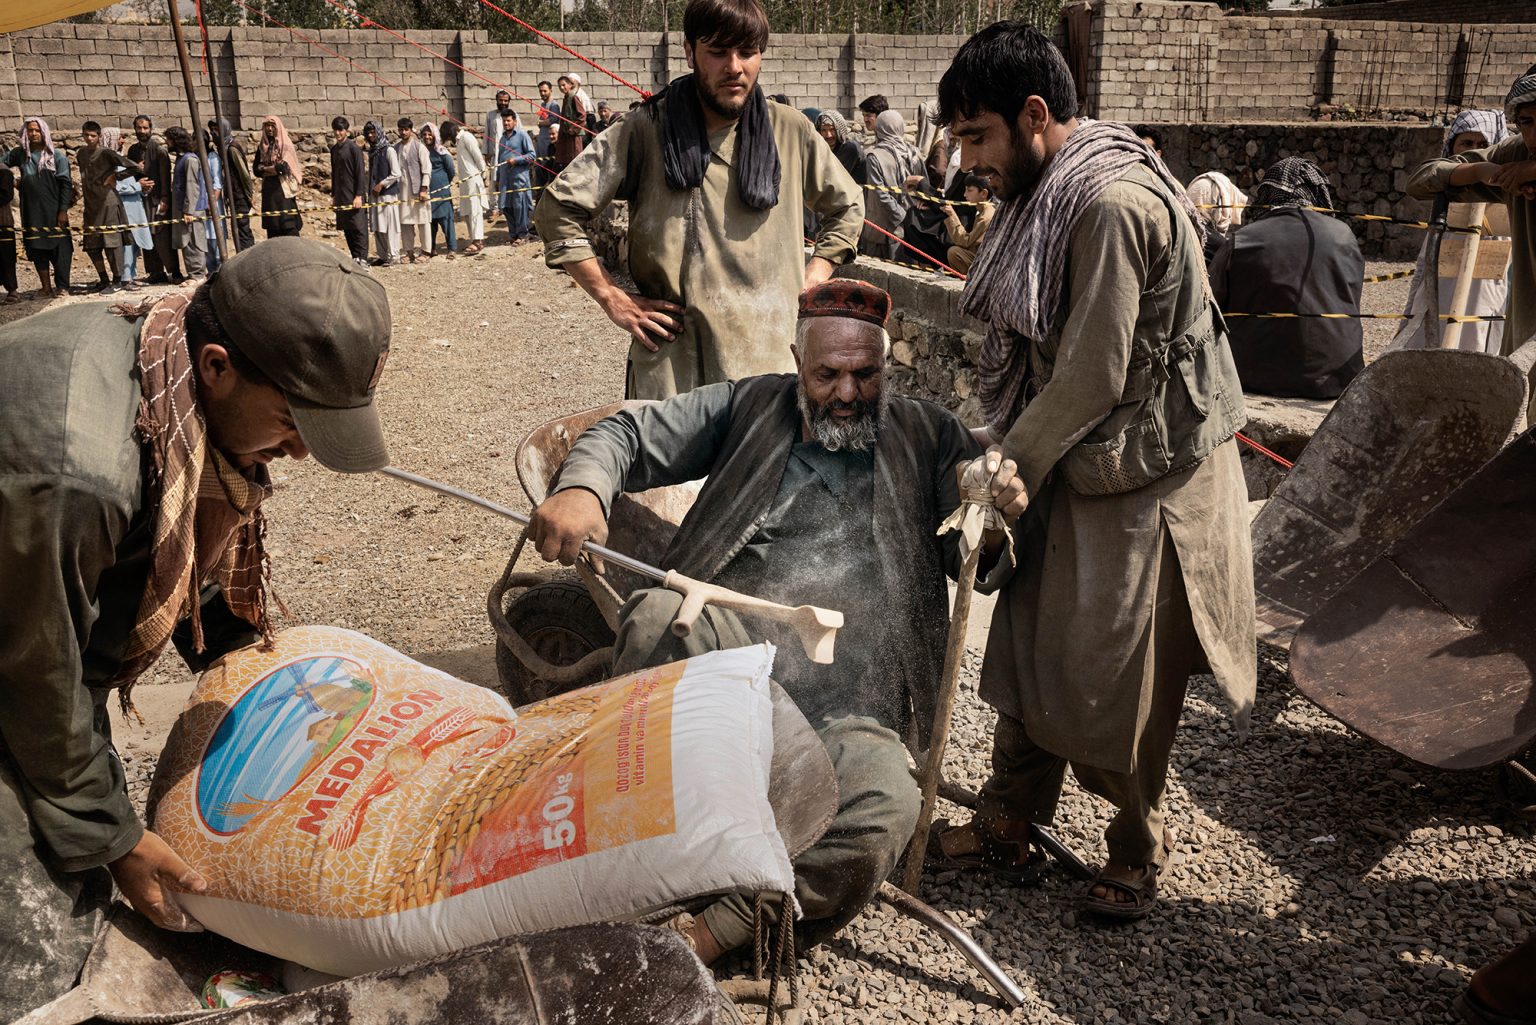 Kabul, Afghanistan, luglio 2022 - In Afghanistan oggi, secondo del stime del WFP, 19milioni di persone soffrono di acuta insicurezza alimentare, e 4 milioni tra bambini di malnutrizione. Quasi la metà dell’intera popolazione del paese dipende dagli aiuti alimentari. In ogni distretto della capitale Kabul, vengono distribuiti mensilmente 5 litri d’olio, 6kg di fagioli, 1kg di sale, 50kg di farina per nucleo famigliare. I Talebani garantiscono la sicurezza ed il controllo dell’ordine durante la distribuzione degli aiuti alimentari. ><Kabul, Afganistan, July 2022 -   Nowadays in Afghanistan, according to the WFP projections, 19 milions of people suffer from severe food insecurity, and around 4 milions children from malnourishment.Nearly half of the whole population of the country depends on food aid.In each district of capital city Kabul are handed out monthly 5 litres of oil, 6 kgs of beans, 1 kg of salt and 50 kg of flour for family unit.The Talebans ensure security and control of the order during the distribution of food aid.